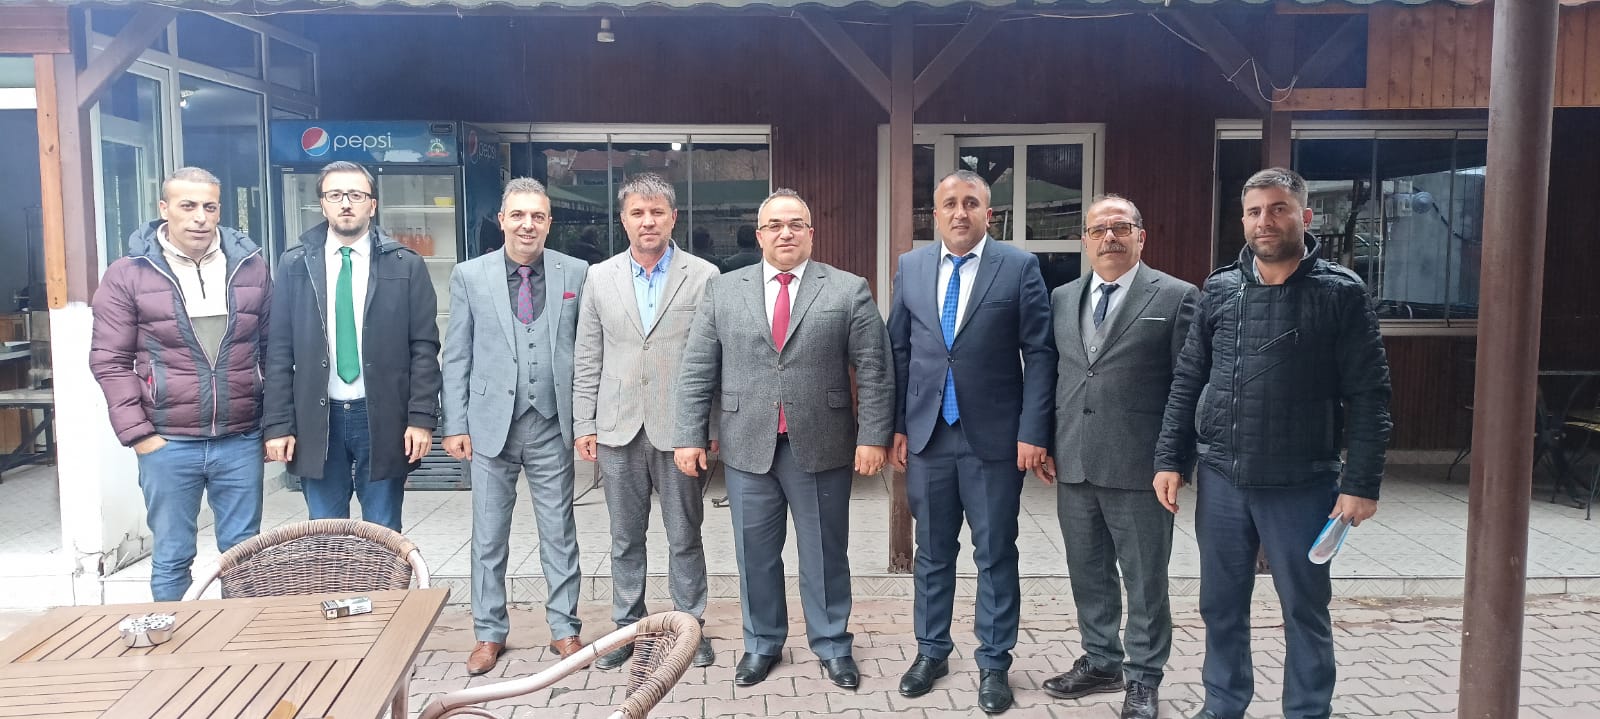 Çerkezköy Erzurumlular Dernek Başkanı ve Yönetim Kurulu ile birlikte Hasbihal ettik.